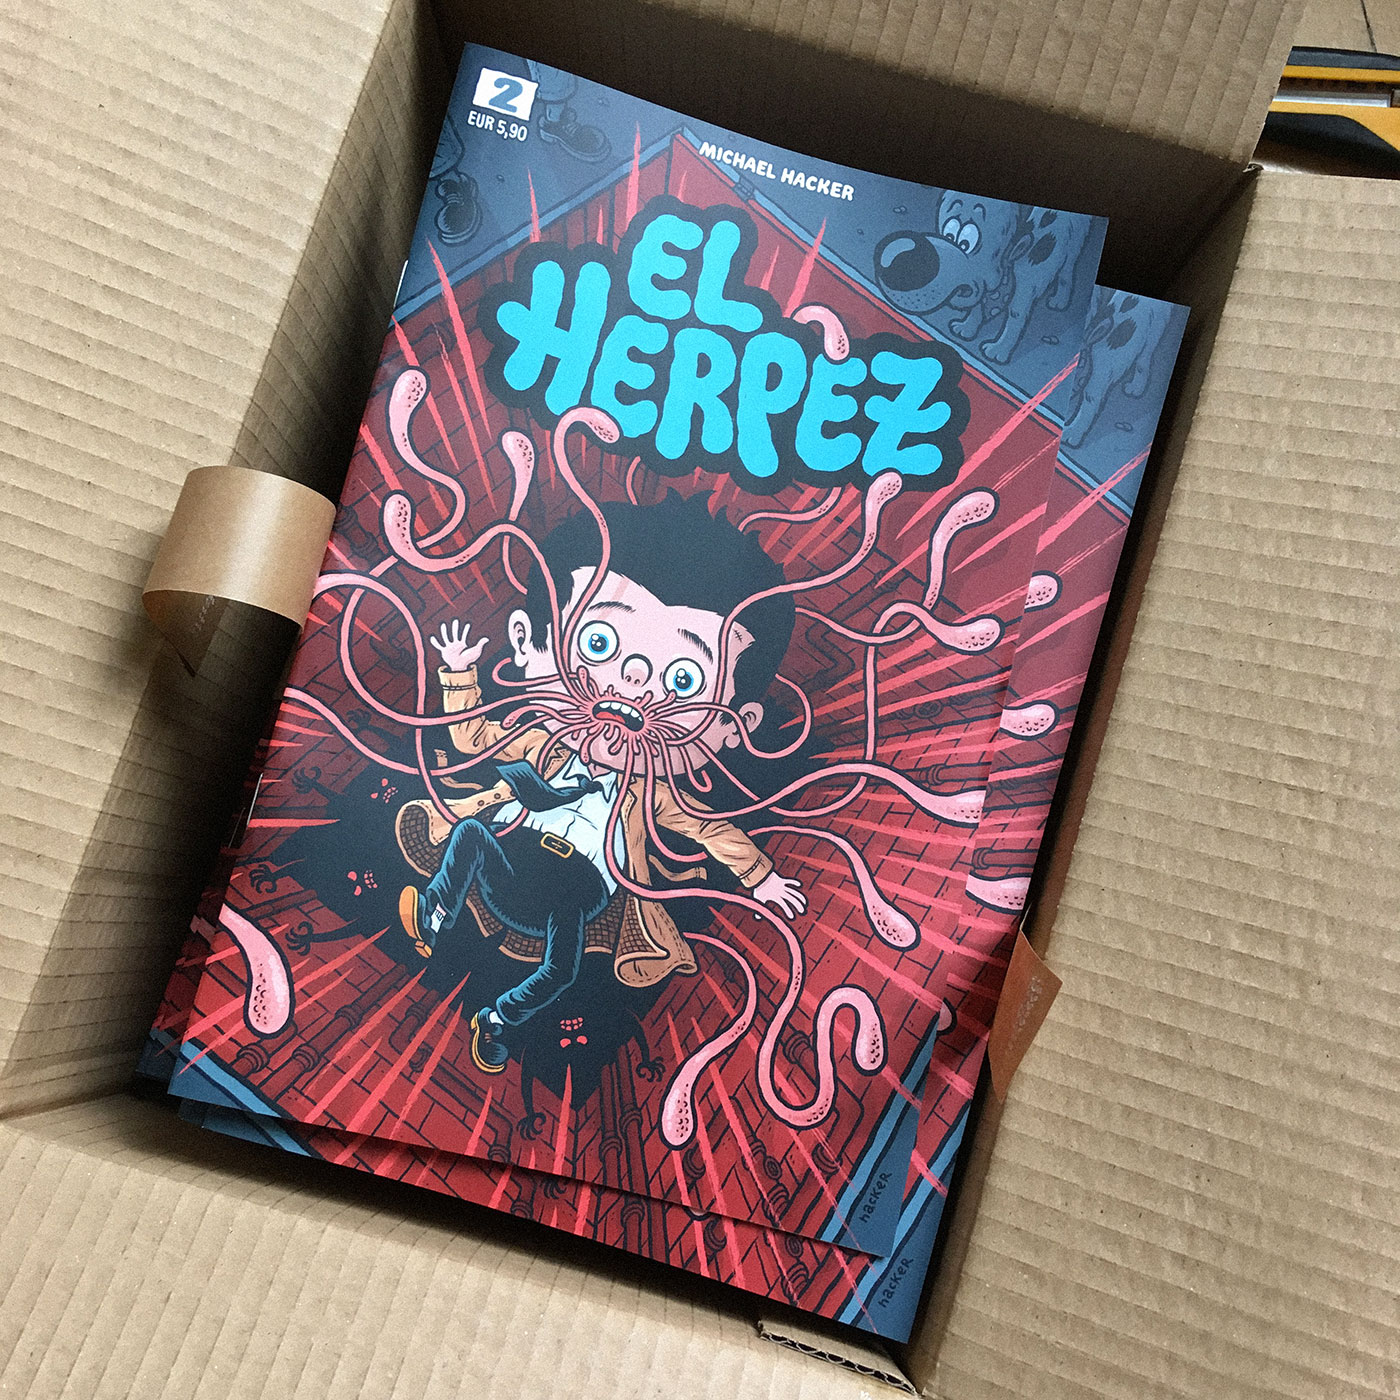 Yay! El Herpez #2 is here!